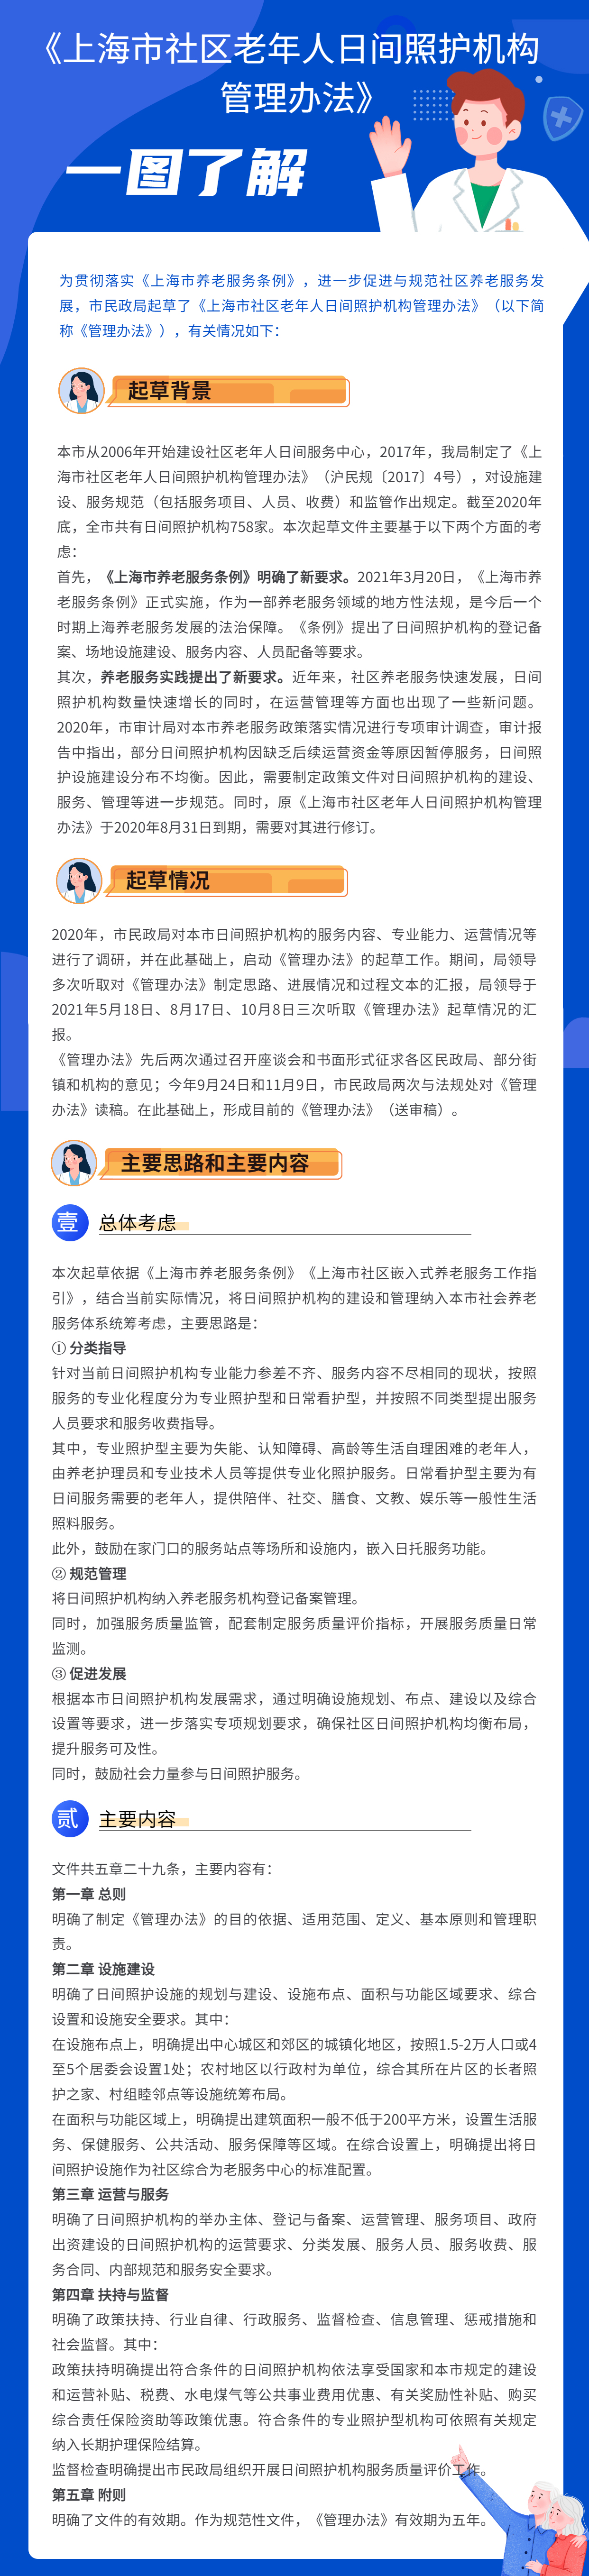 一图了解《上海市社区老年人日间照护机构管理办法》2.jpg